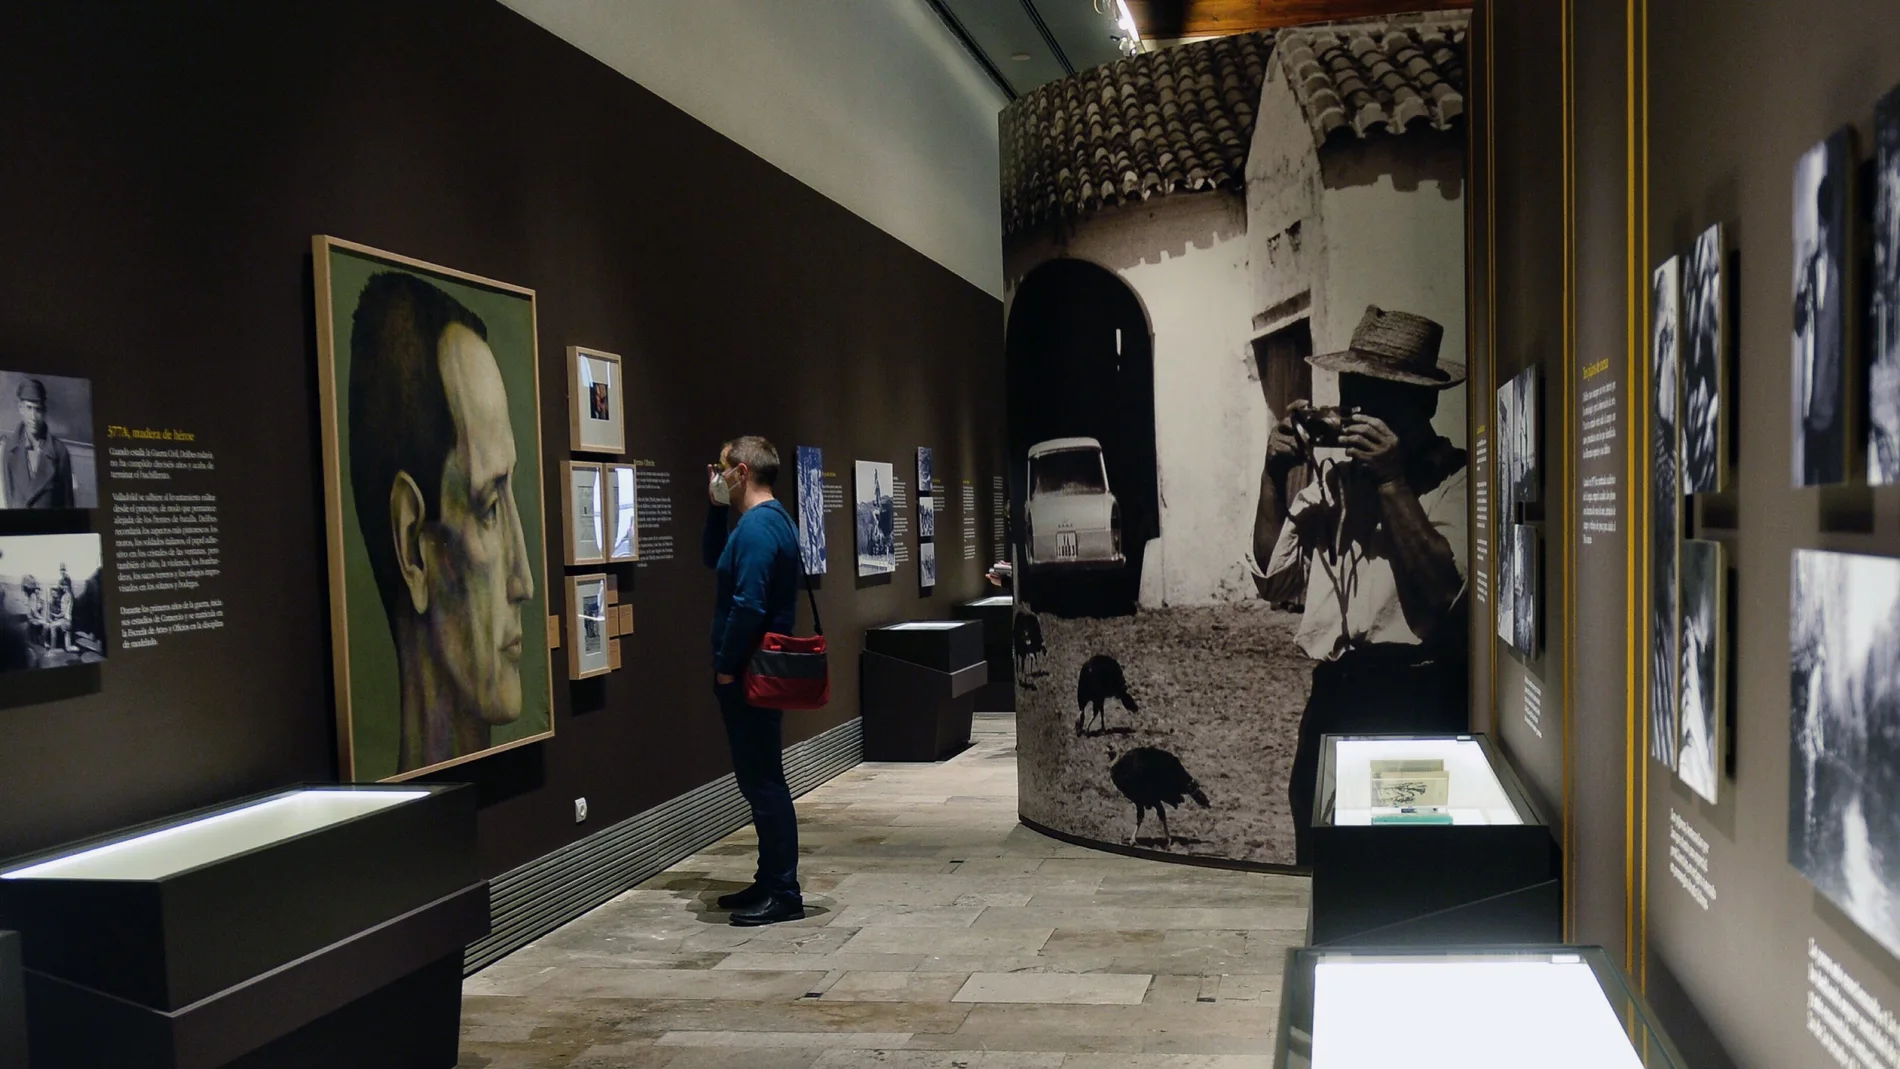 Un hombre visita la exposición "Delibes", que desde este lunes se puede contemplar en la sala de exposiciones de La Pasión en Valladolid